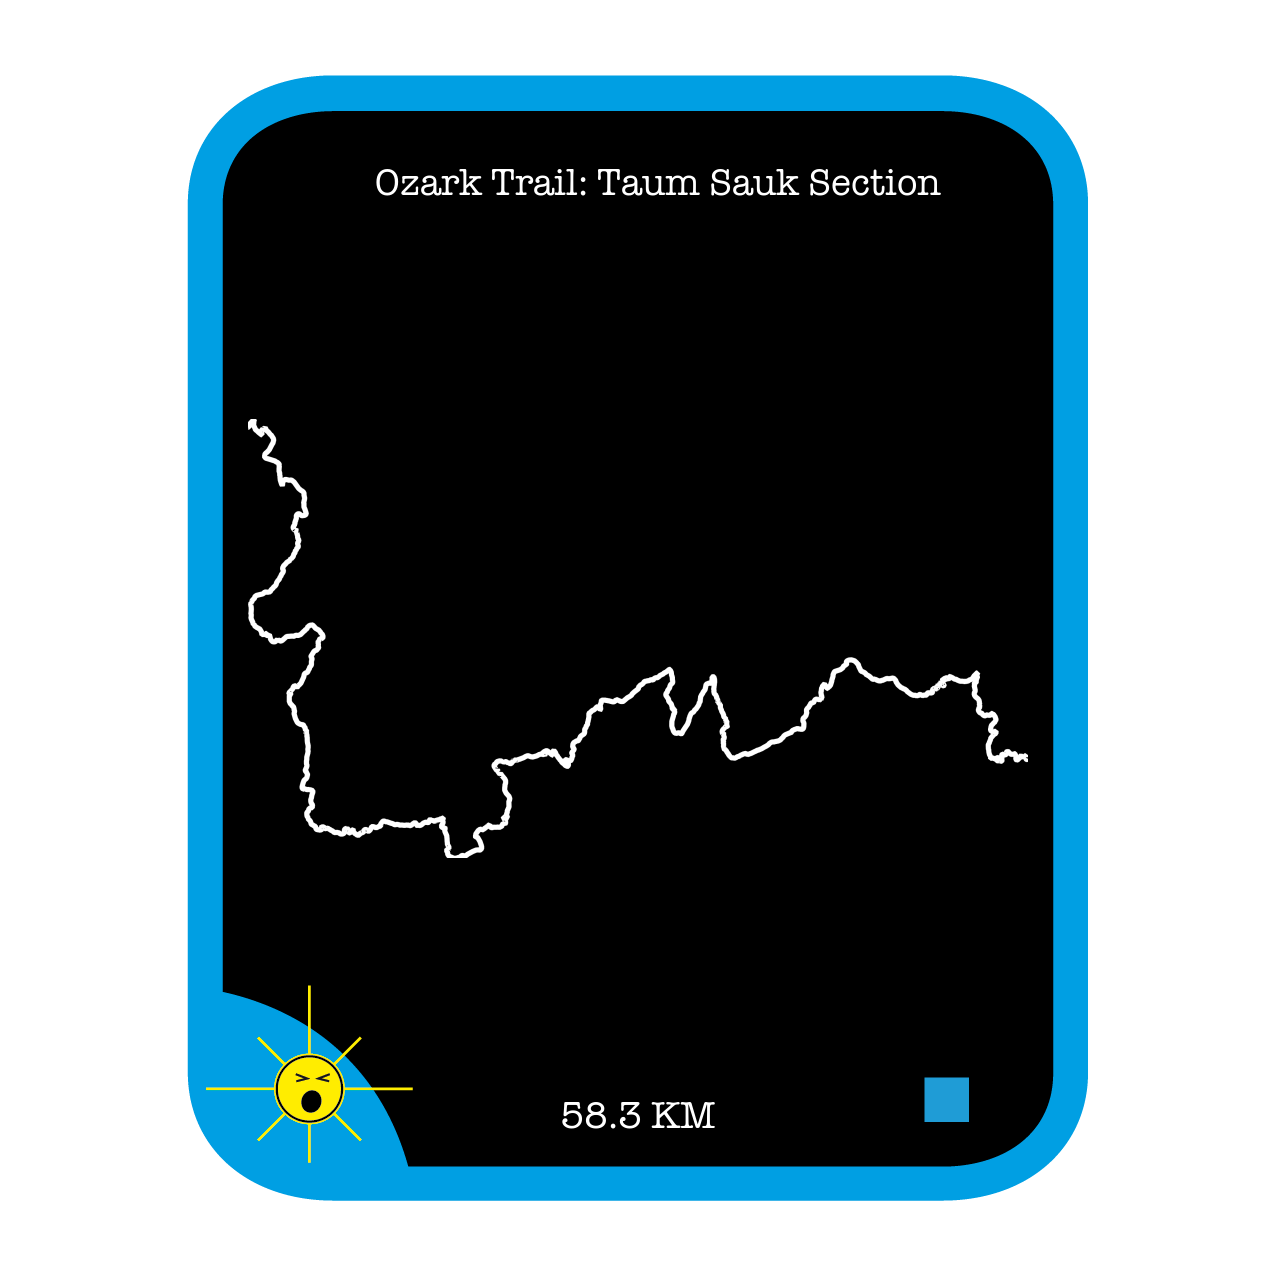 Ozark Trail: Taum Sauk Section